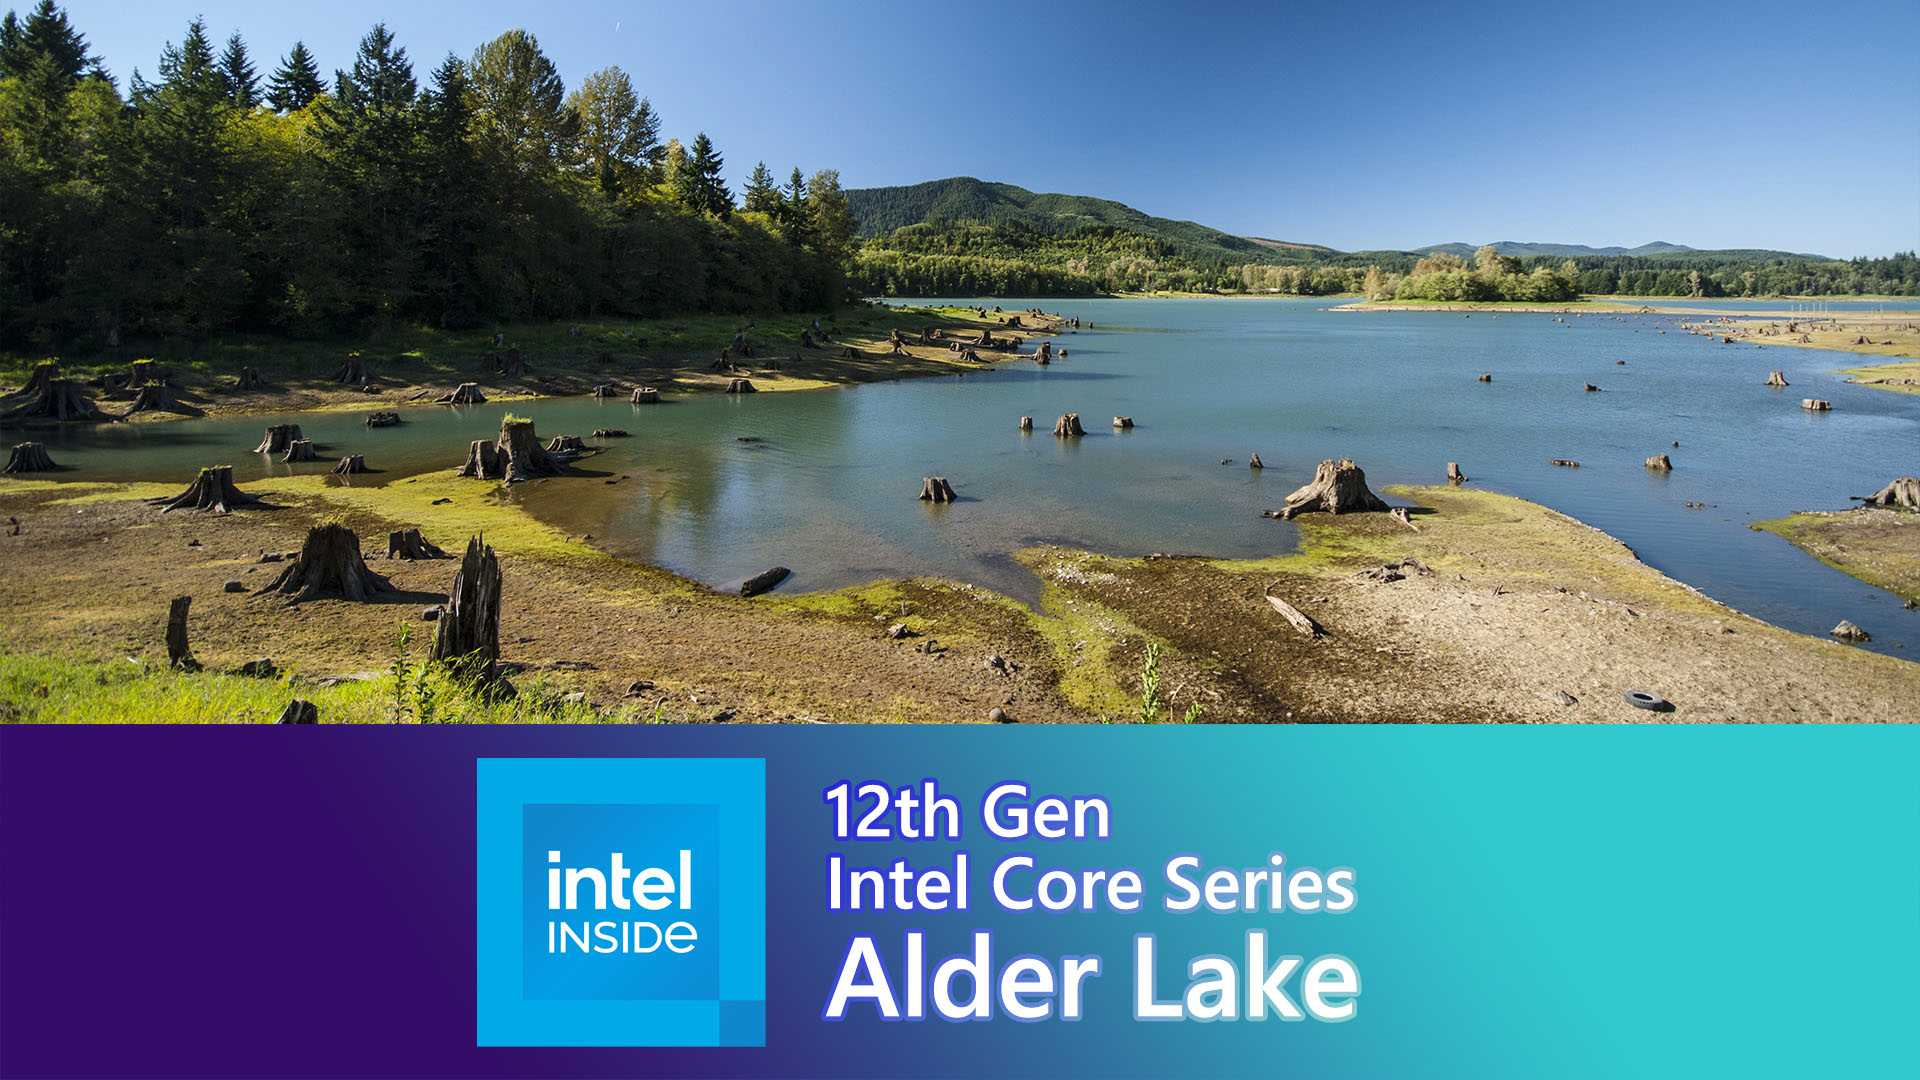 IntelがAlder Lakeで『ATX12VO』を推奨。そもそも『ATX12VO』とは？